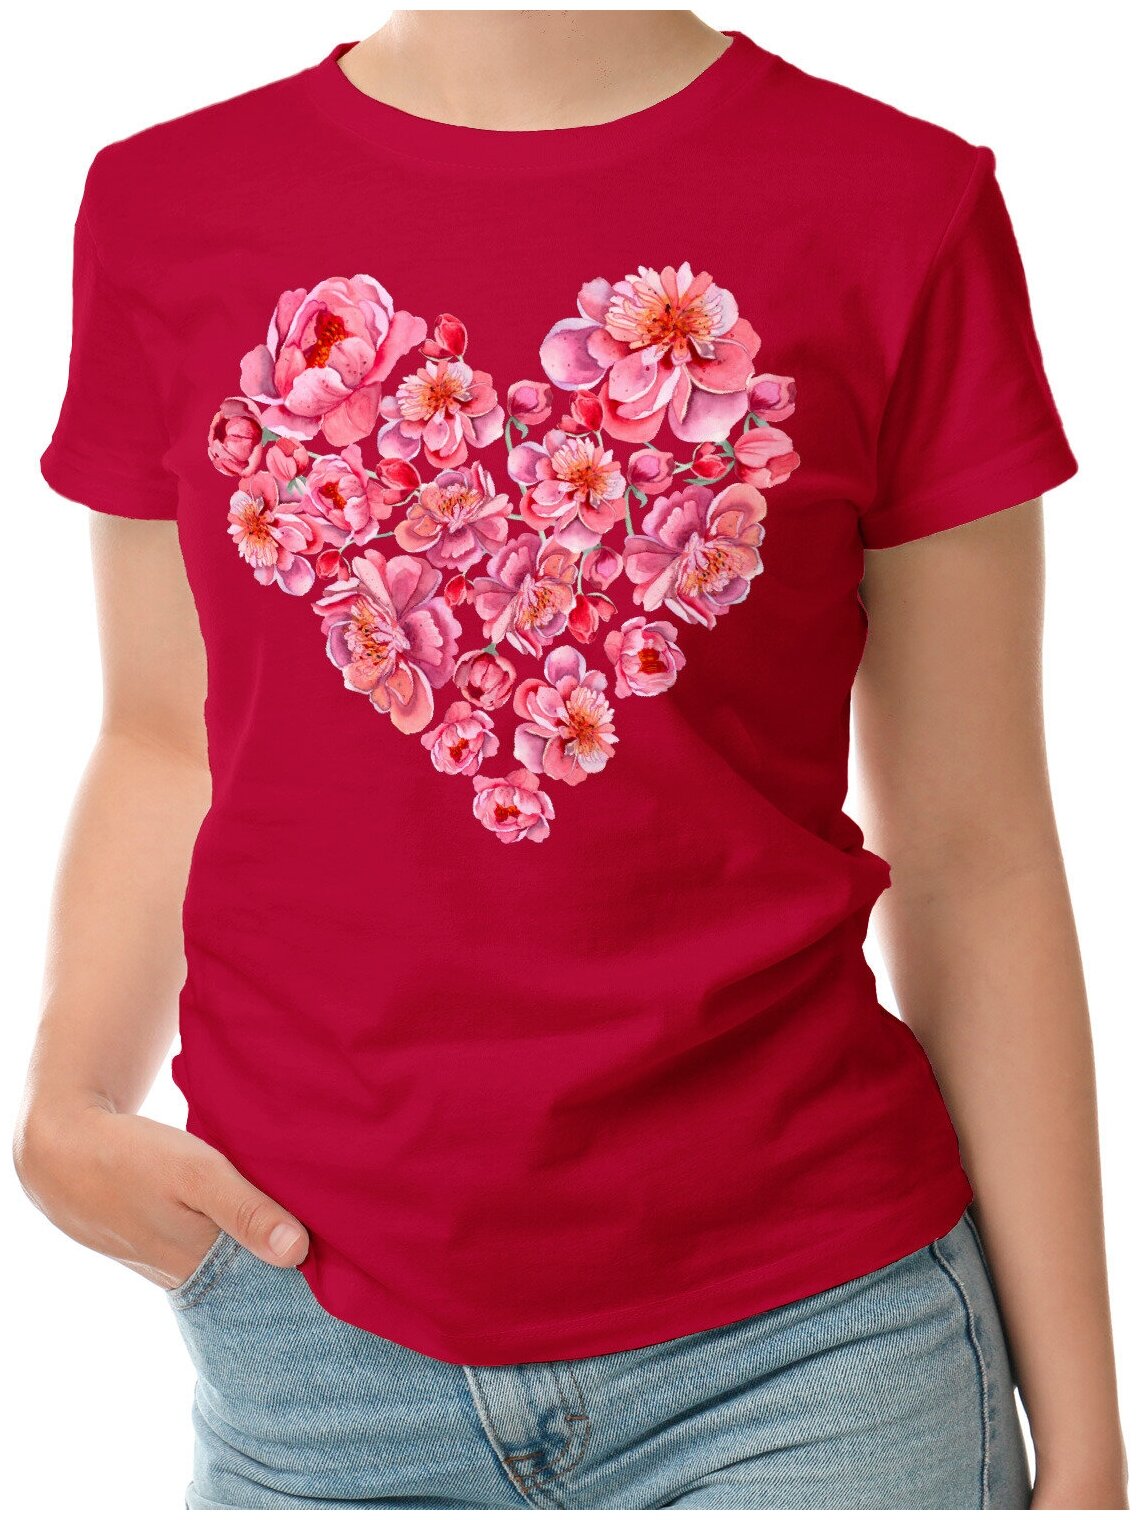 Женская футболка «Пионовое сердце» (S 